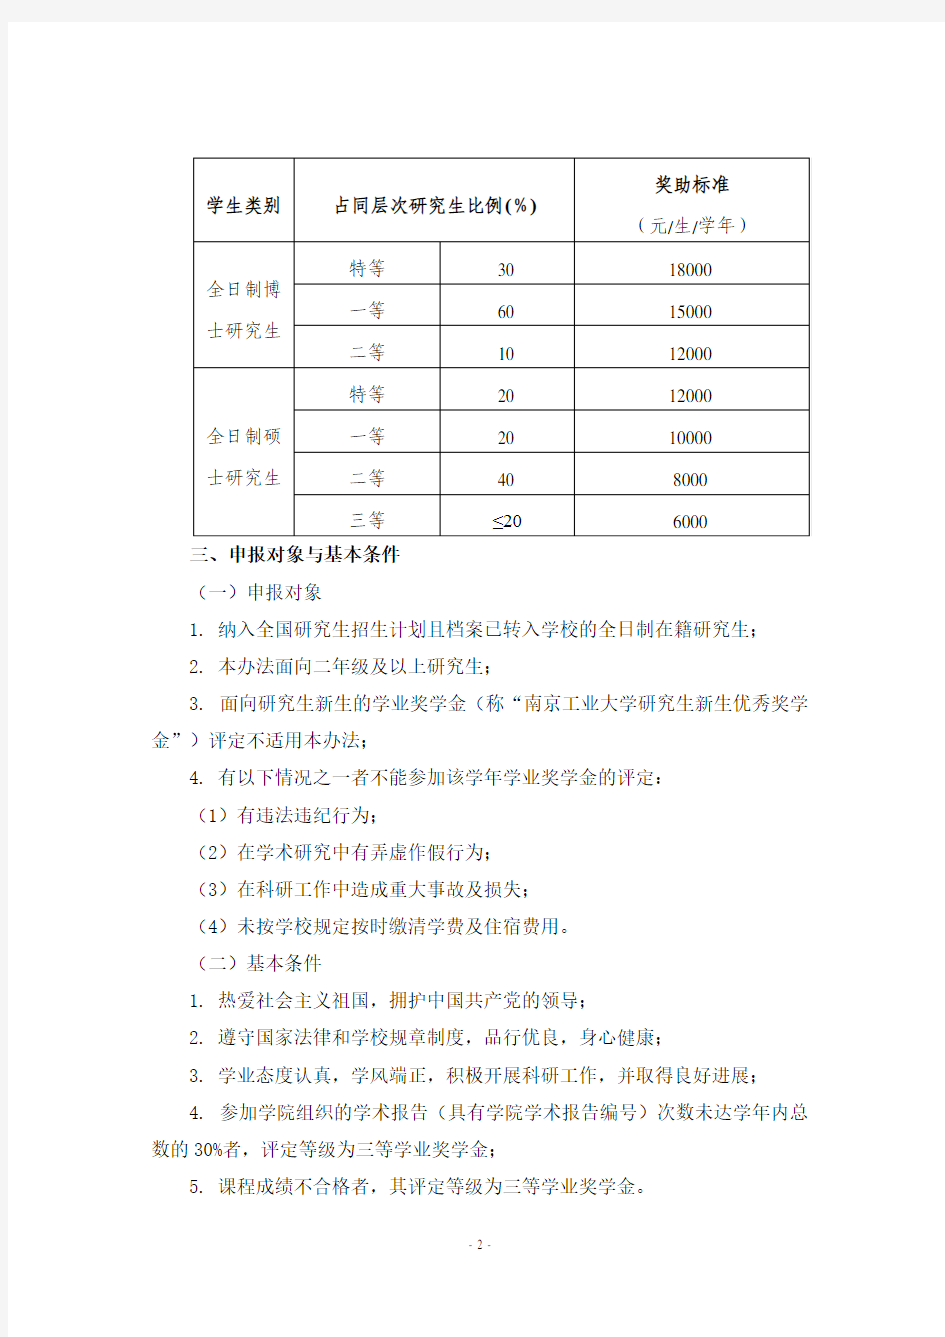 南京工业大学材料科学与工程学院研究生学业奖学金推荐及评选细则(试行)